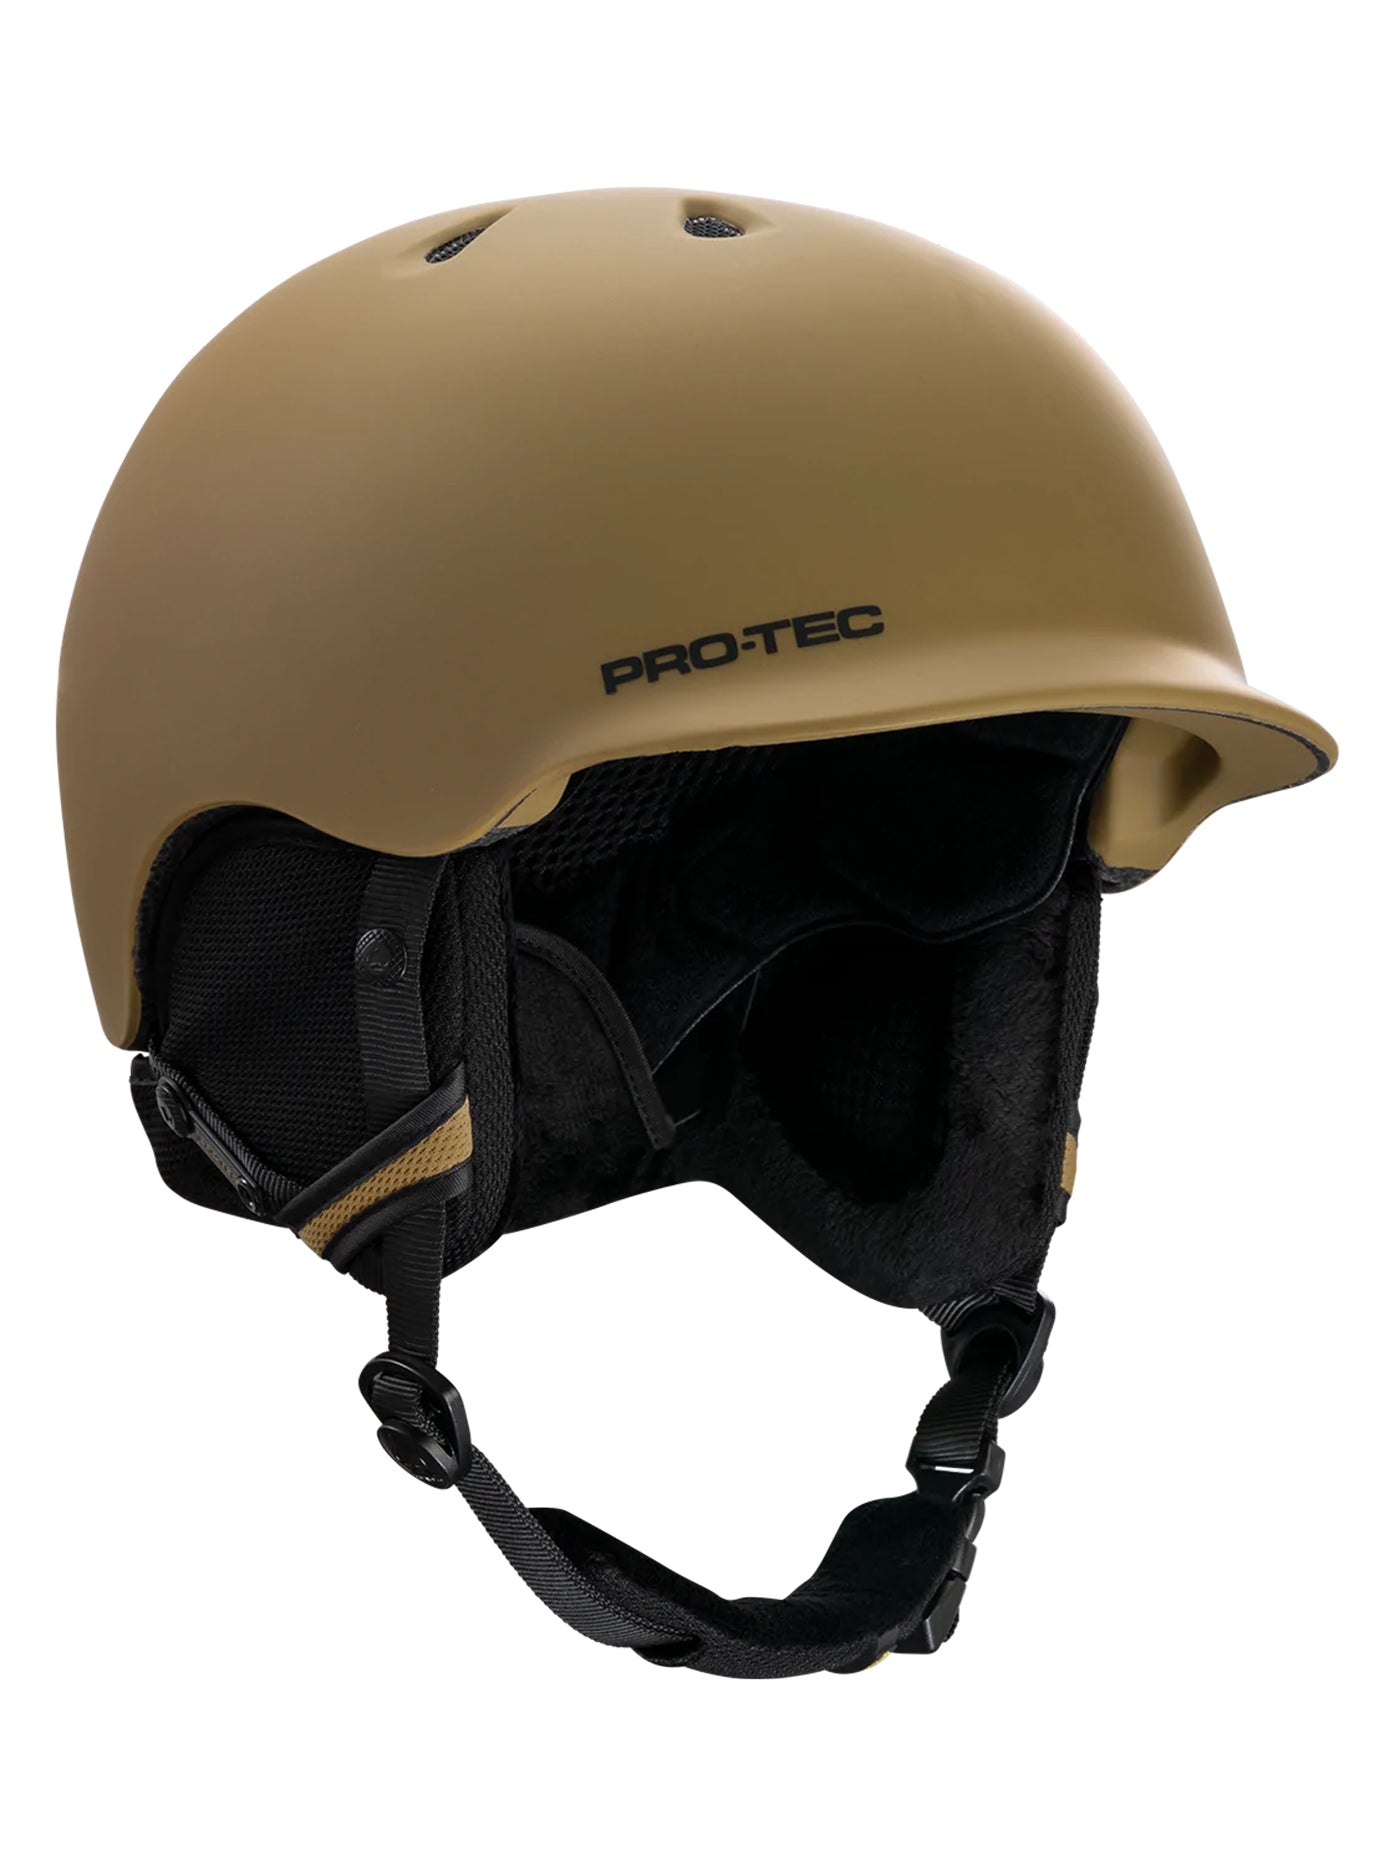 Pro-Tec Riot Certified Snowboard Helmet